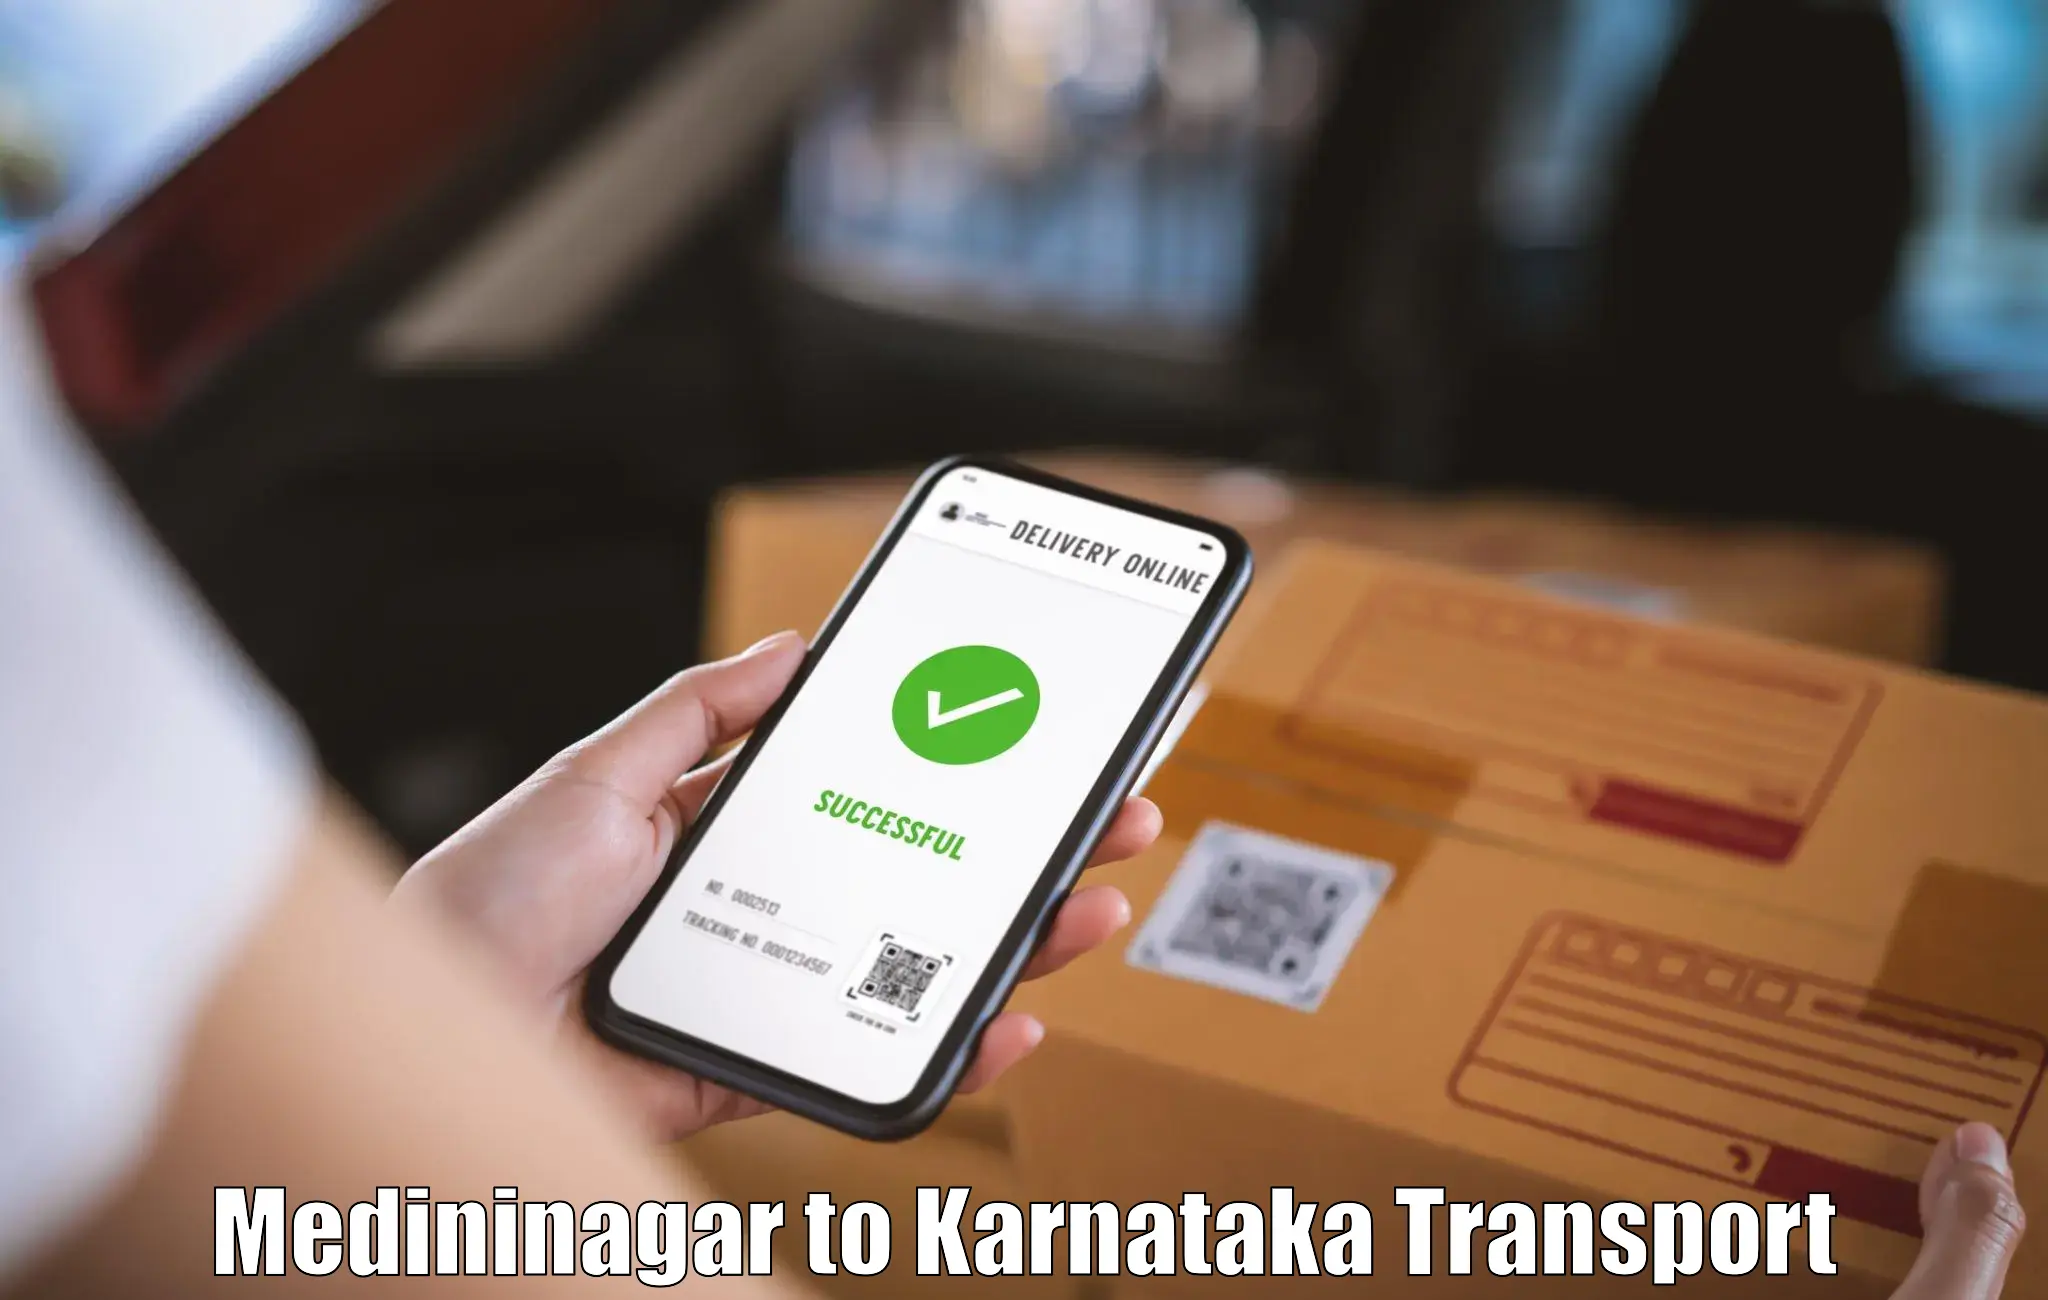 Express transport services Medininagar to Karnataka